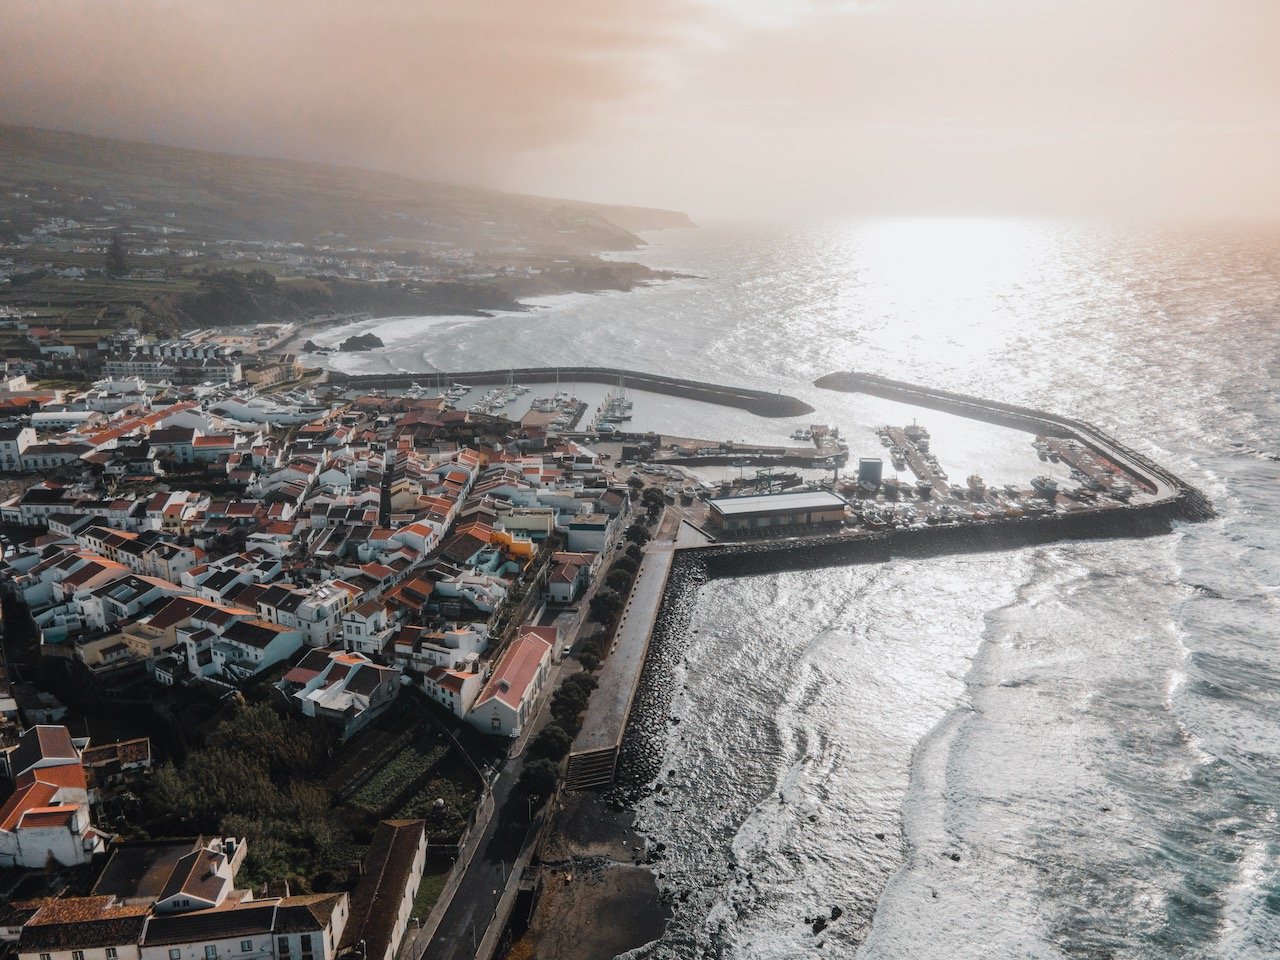   Vila Franca do Campo, São Miguel, the Azores (ISO 100, 4.5 mm,  f /2.8, 1/120 s)  